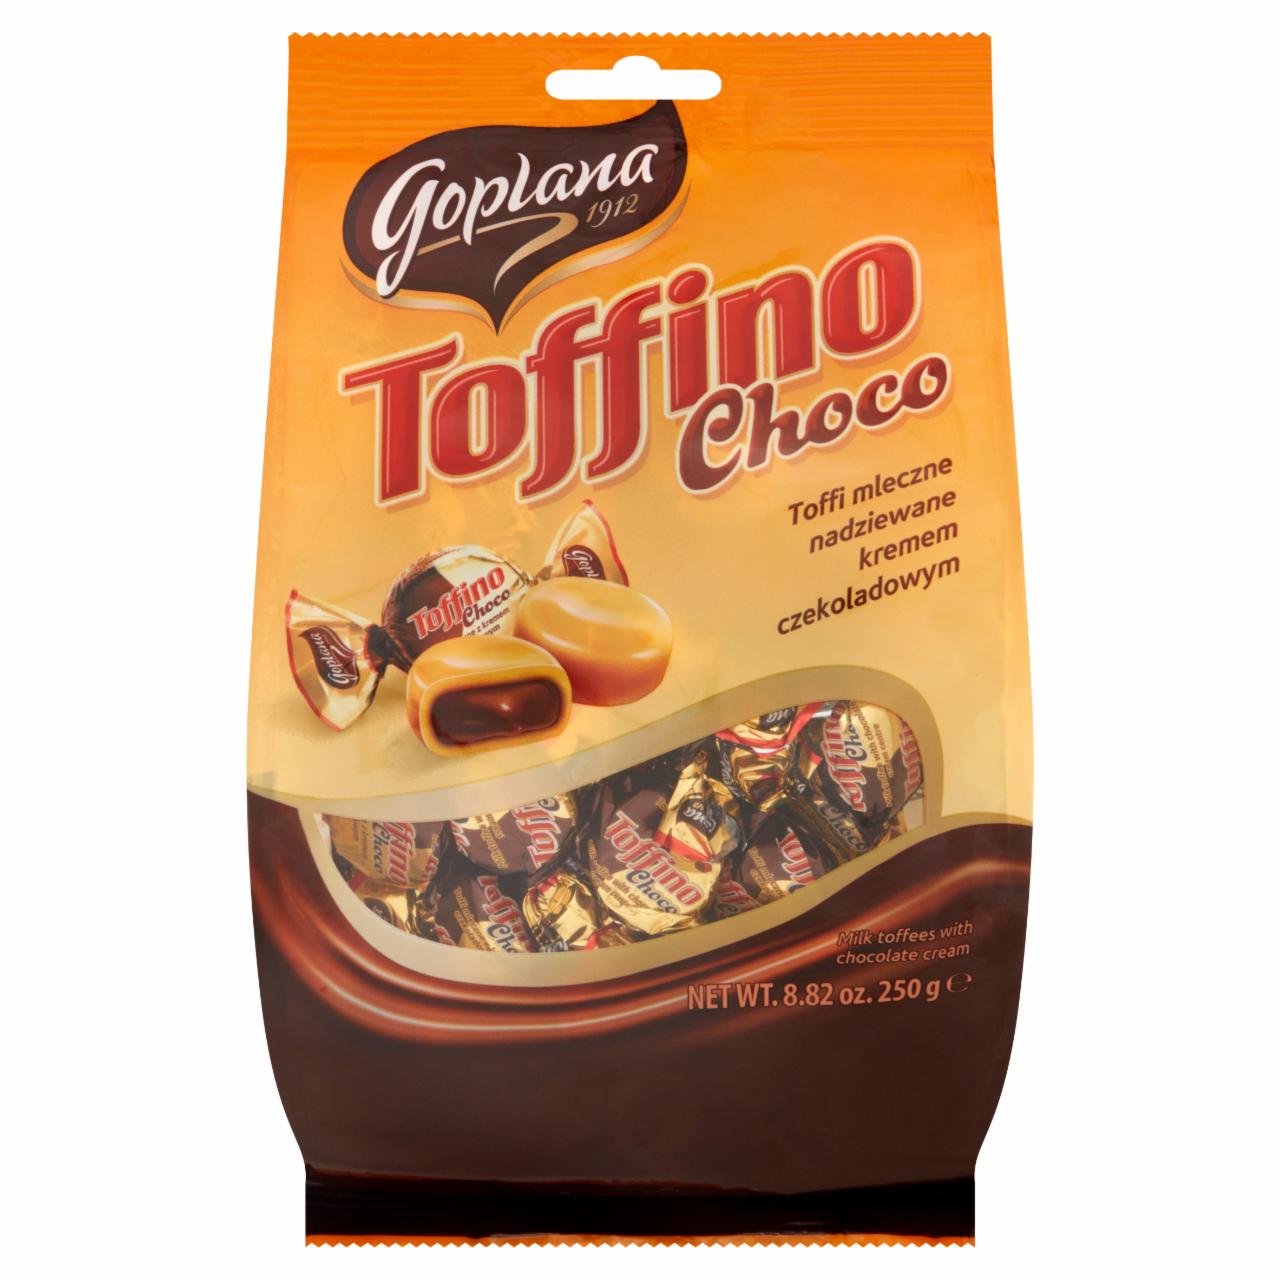 Zdjęcia - Goplana Toffino Choco Toffi mleczne nadziewane kremem czekoladowym 250 g